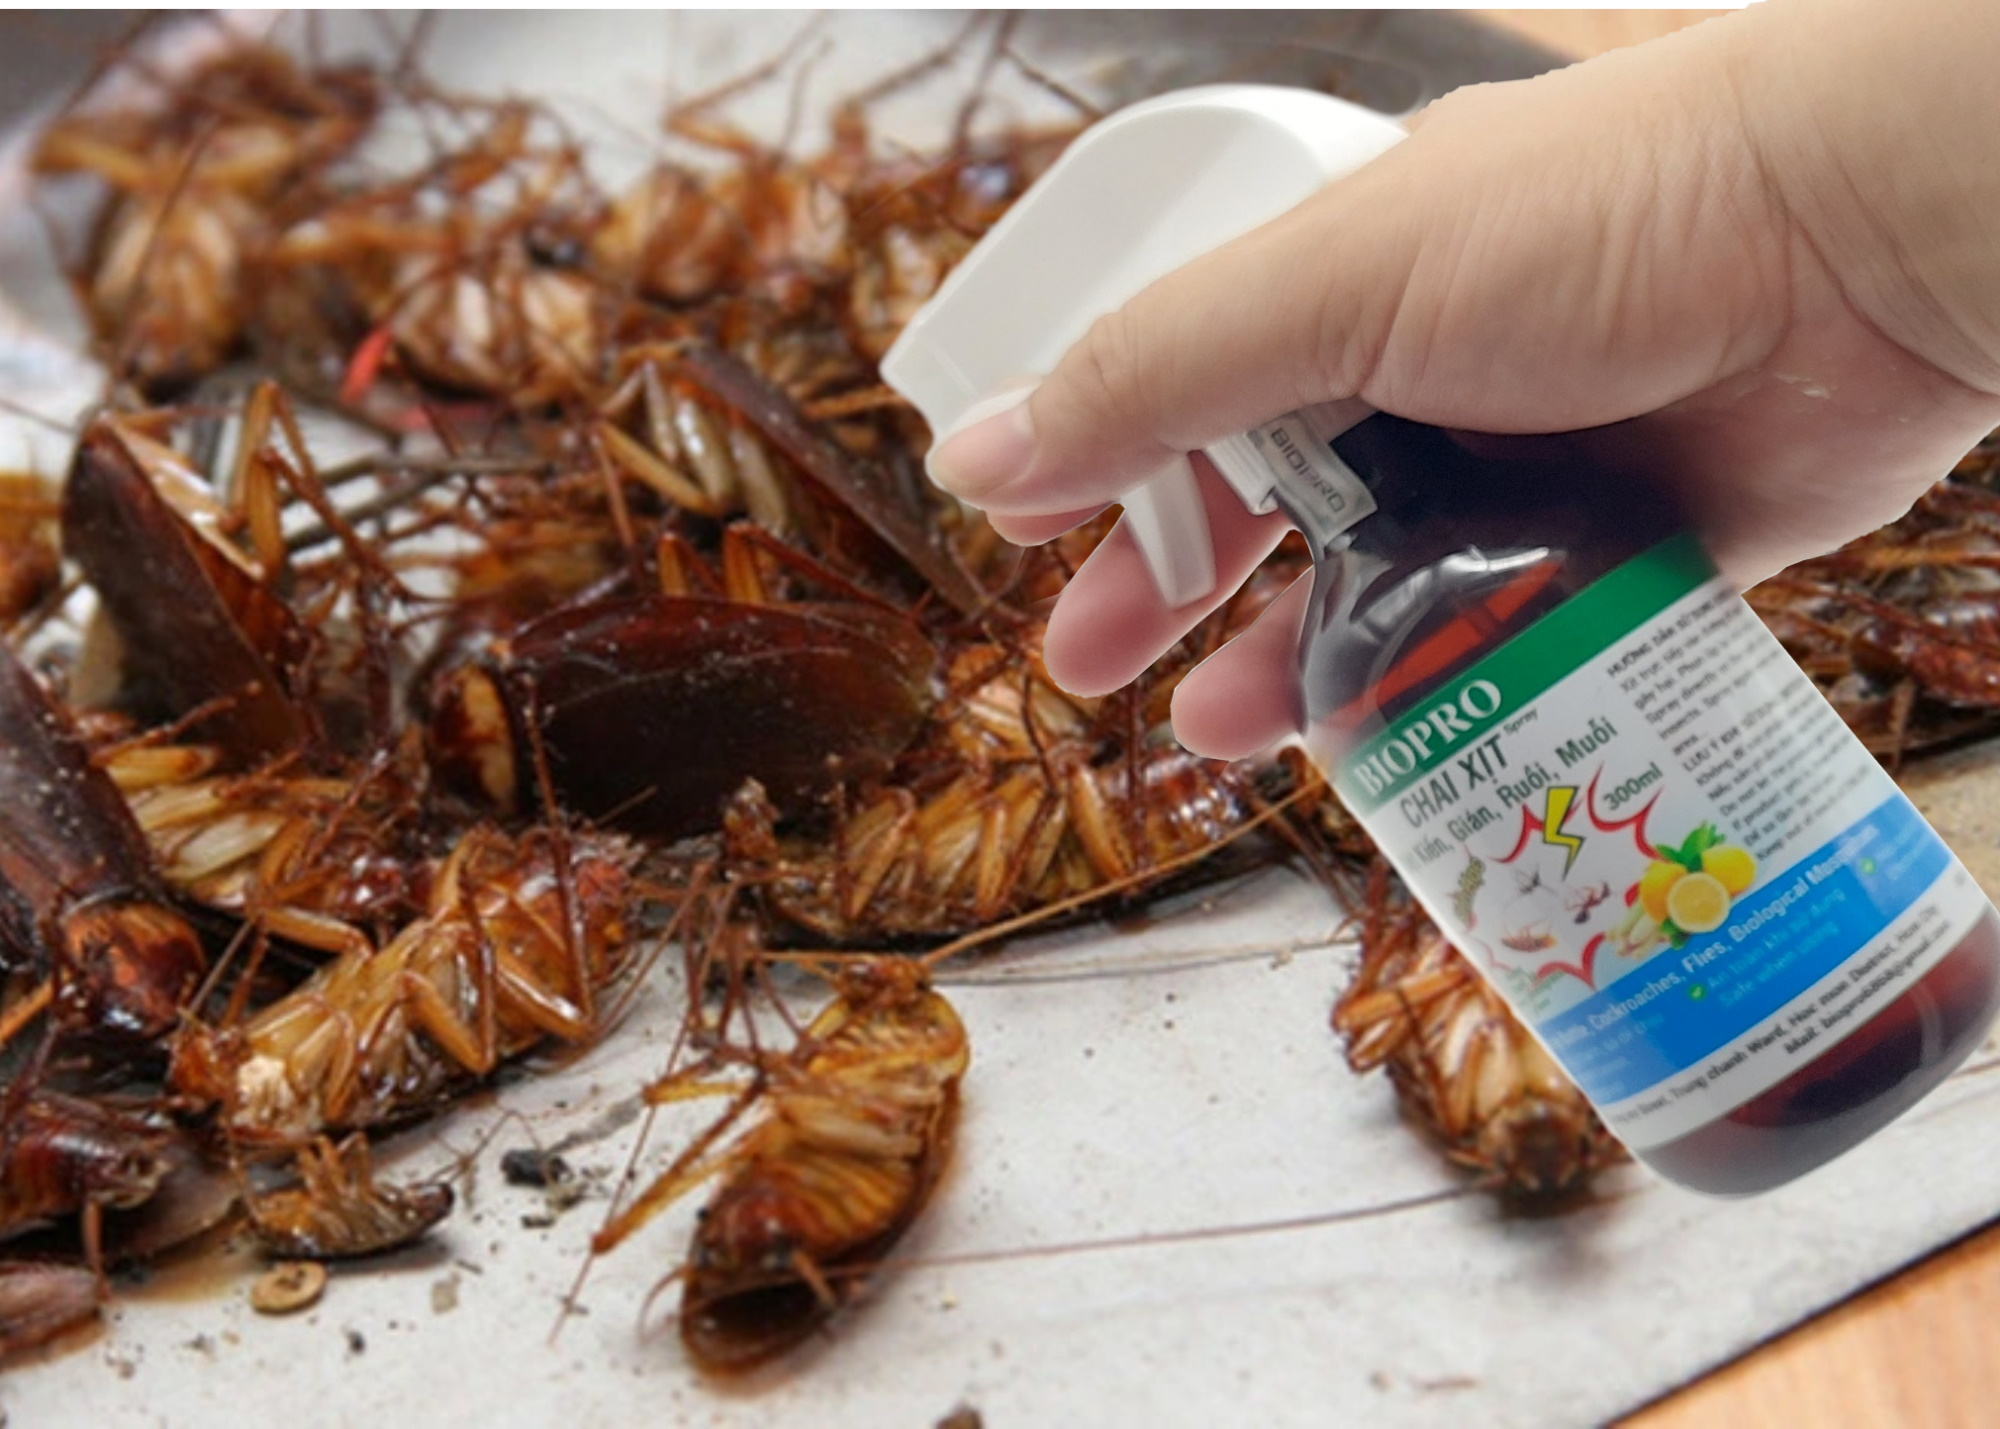 Chai xịt diệt kiến diệt gián ruồi muỗi Sinh học Biopro Chai 300ml Diệt sạch côn trùng gây hại An toàn Hiệu quả Sx tại VN